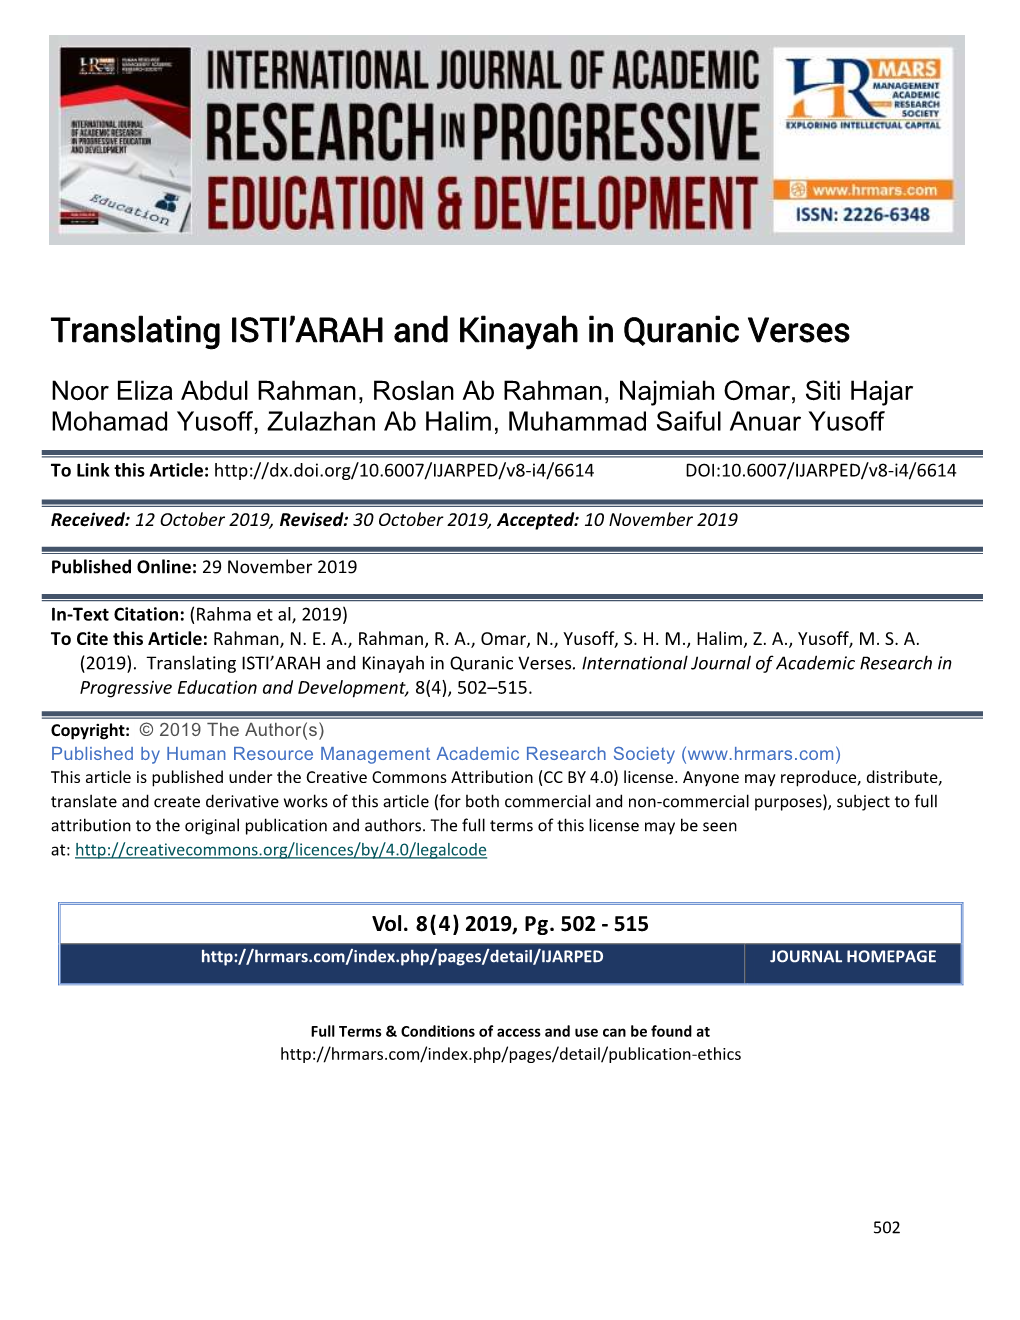 Translating ISTI'arah and Kinayah in Quranic Verses